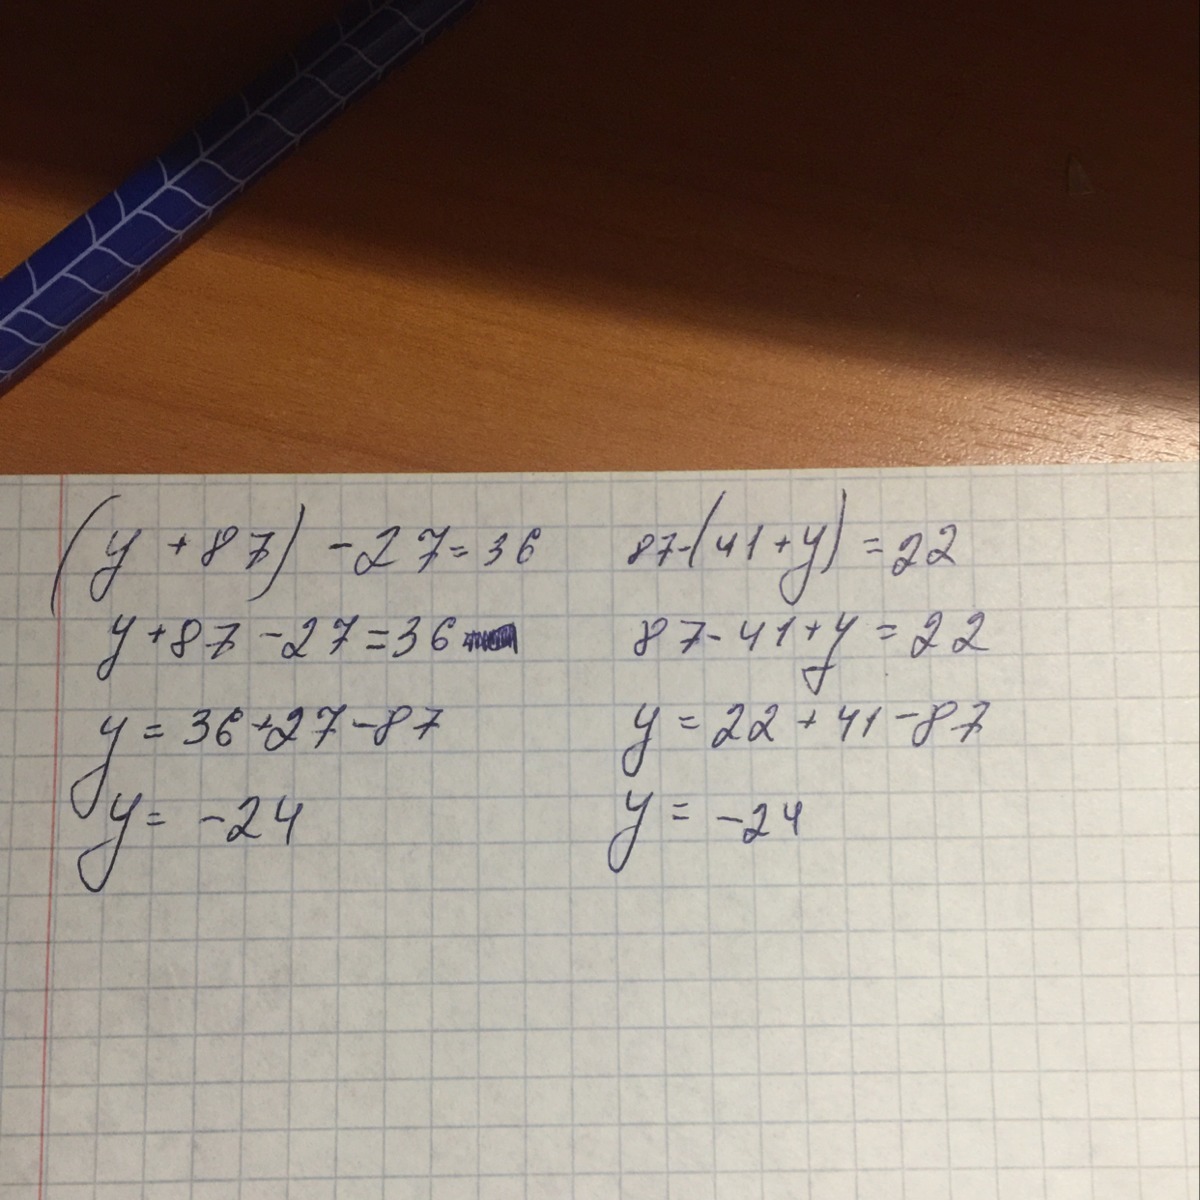 22 б равно 10. Уравнение 87- 41+y 22. 87-(41+Y)=22. 87 41 Y 22 решить уравнение. Как решить уравнение 87- 41+y 22.